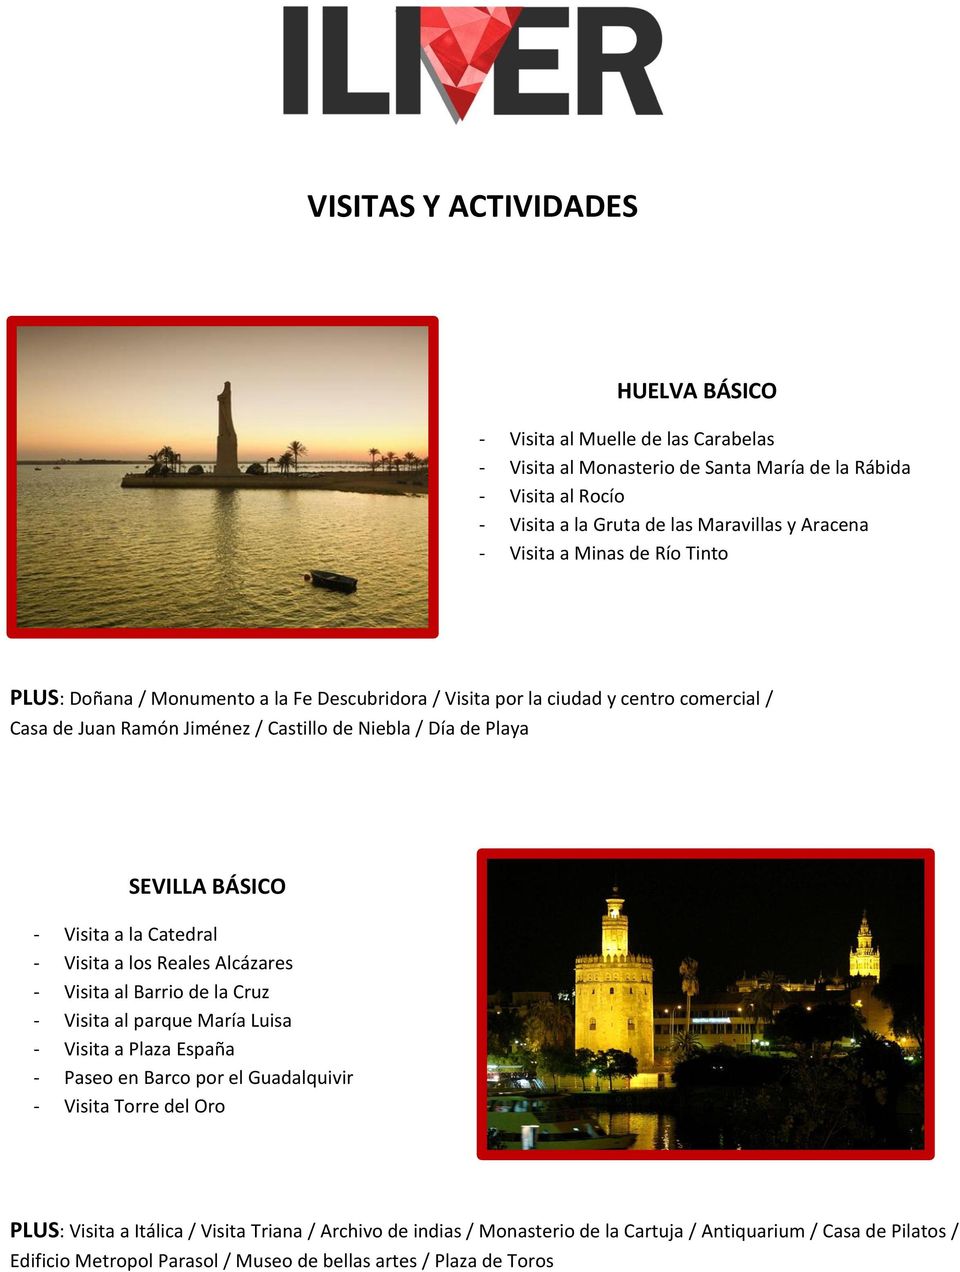 BÁSICO - Visita a la Catedral - Visita a los Reales Alcázares - Visita al Barrio de la Cruz - Visita al parque María Luisa - Visita a Plaza España - Paseo en Barco por el Guadalquivir - Visita